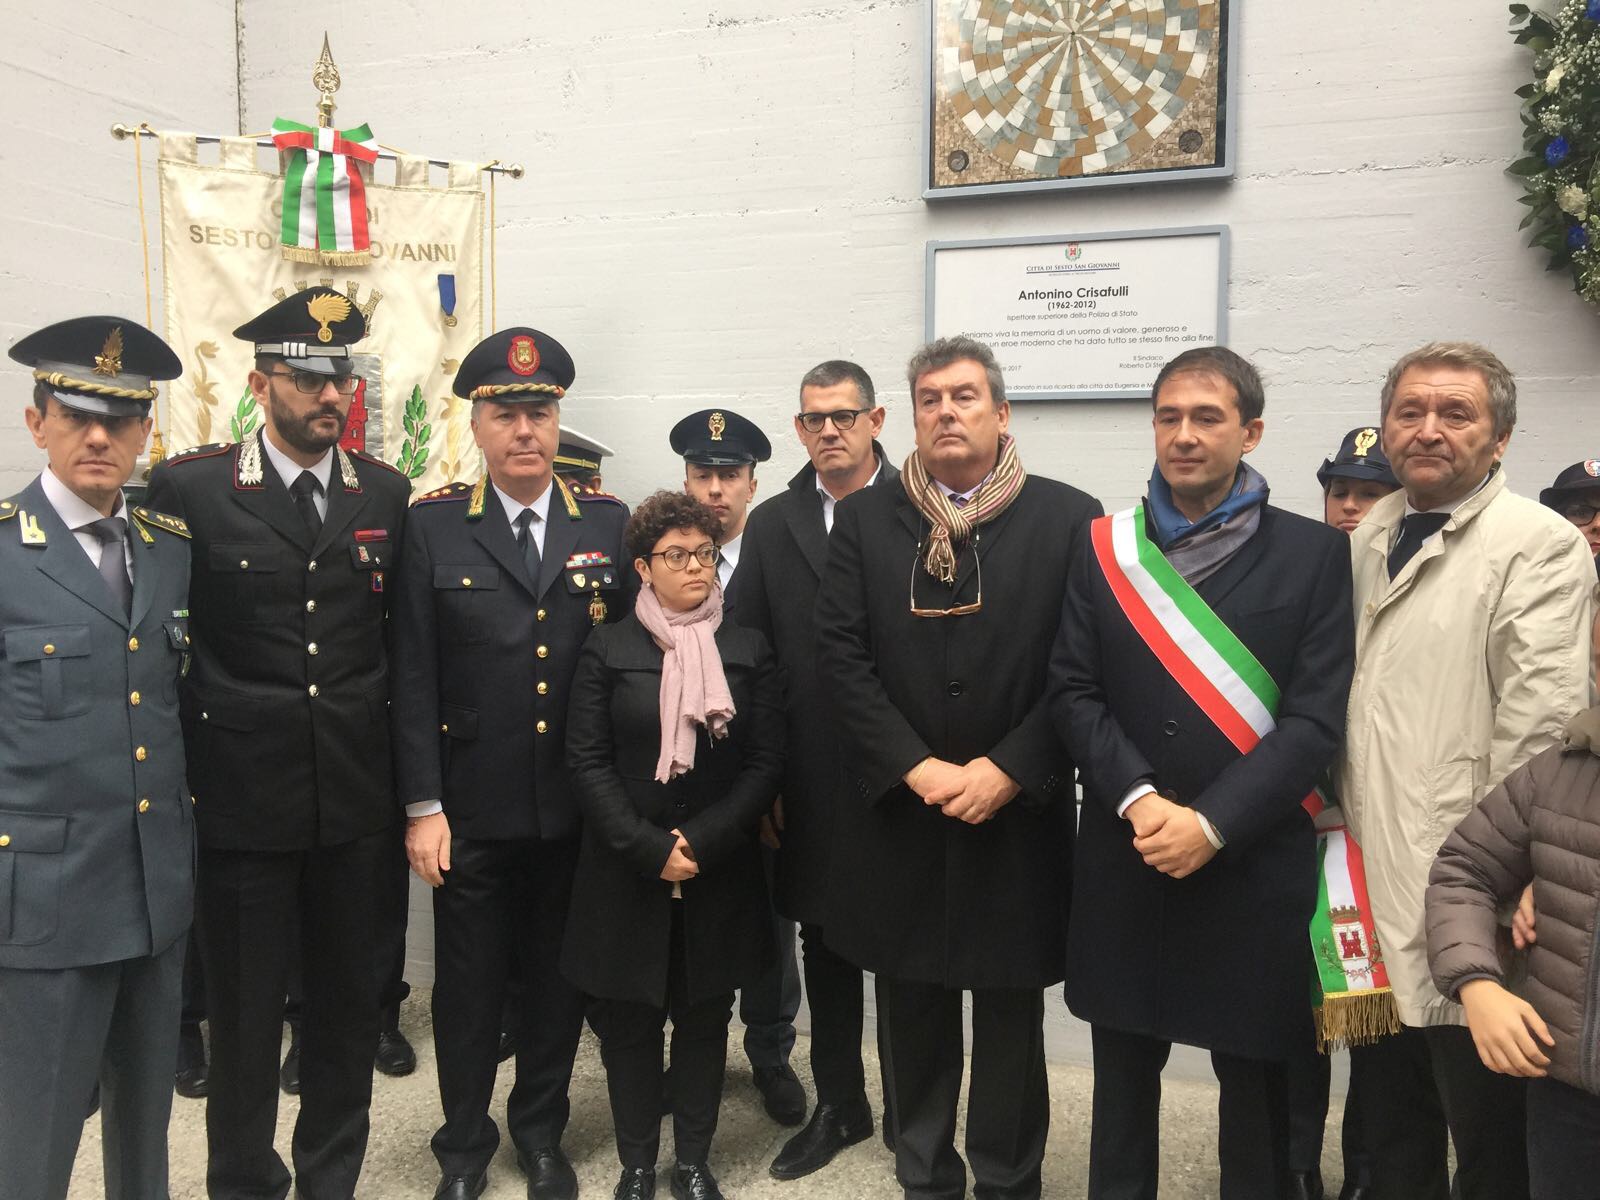 Sesto San Giovanni Cerimonia commemorazione dell'ispettore Antonino Crisafulli